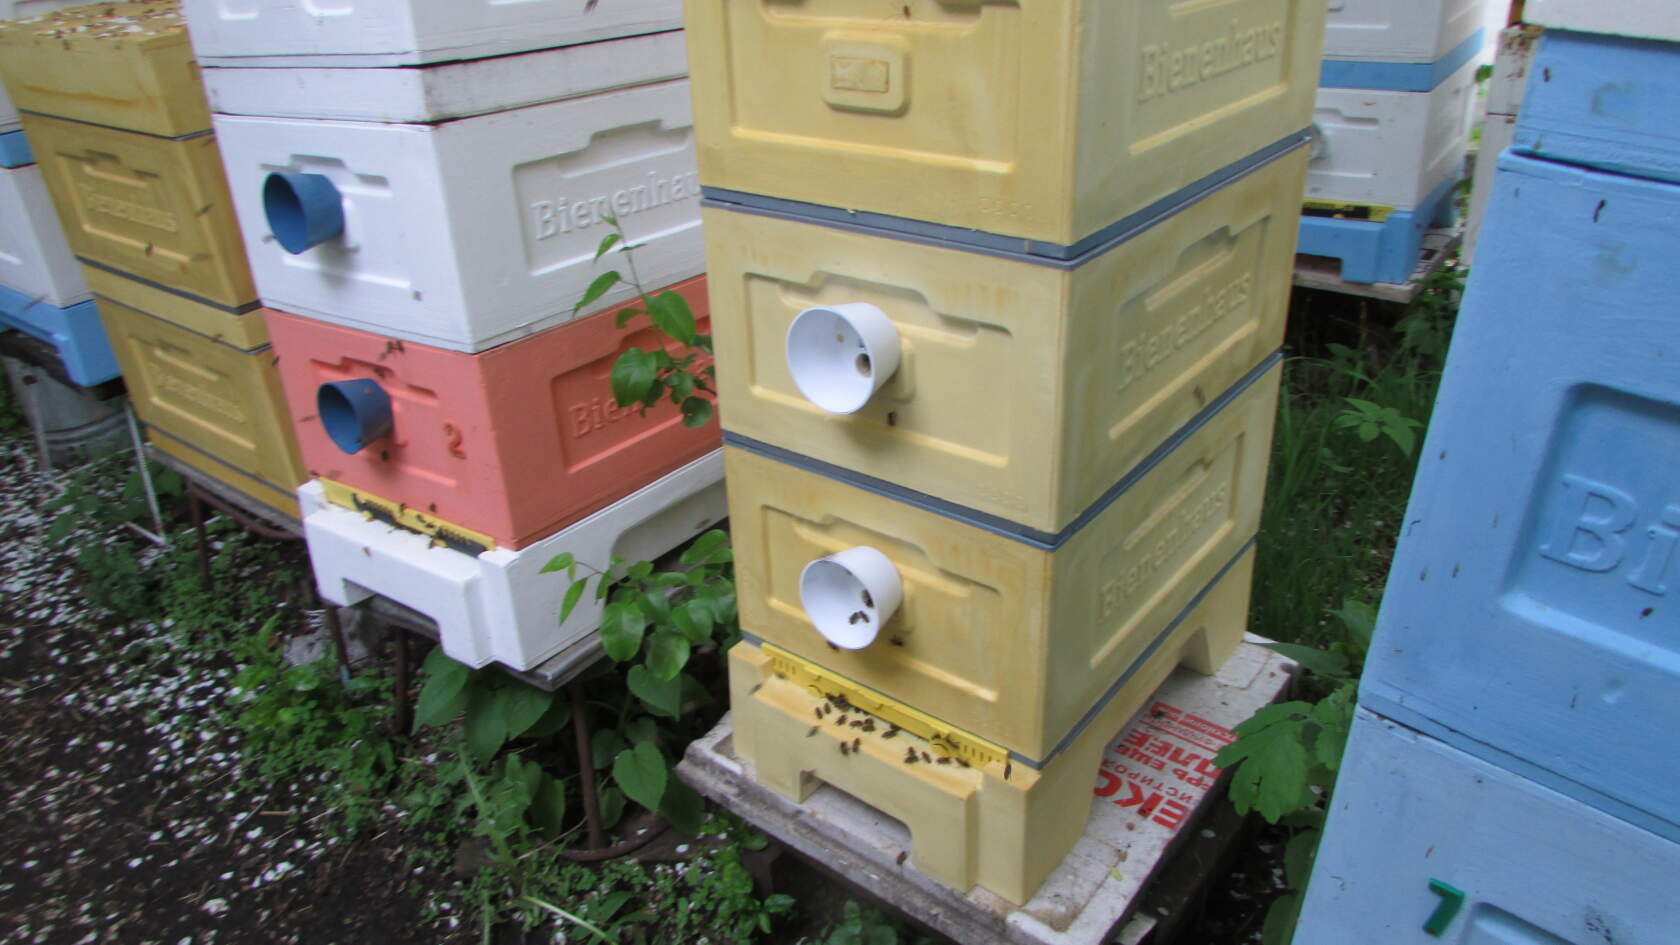 улей Кука от фирмы BienenHaus - 8 рамочный улей на рутовскую рамку, дачников и пчеловодов любителей